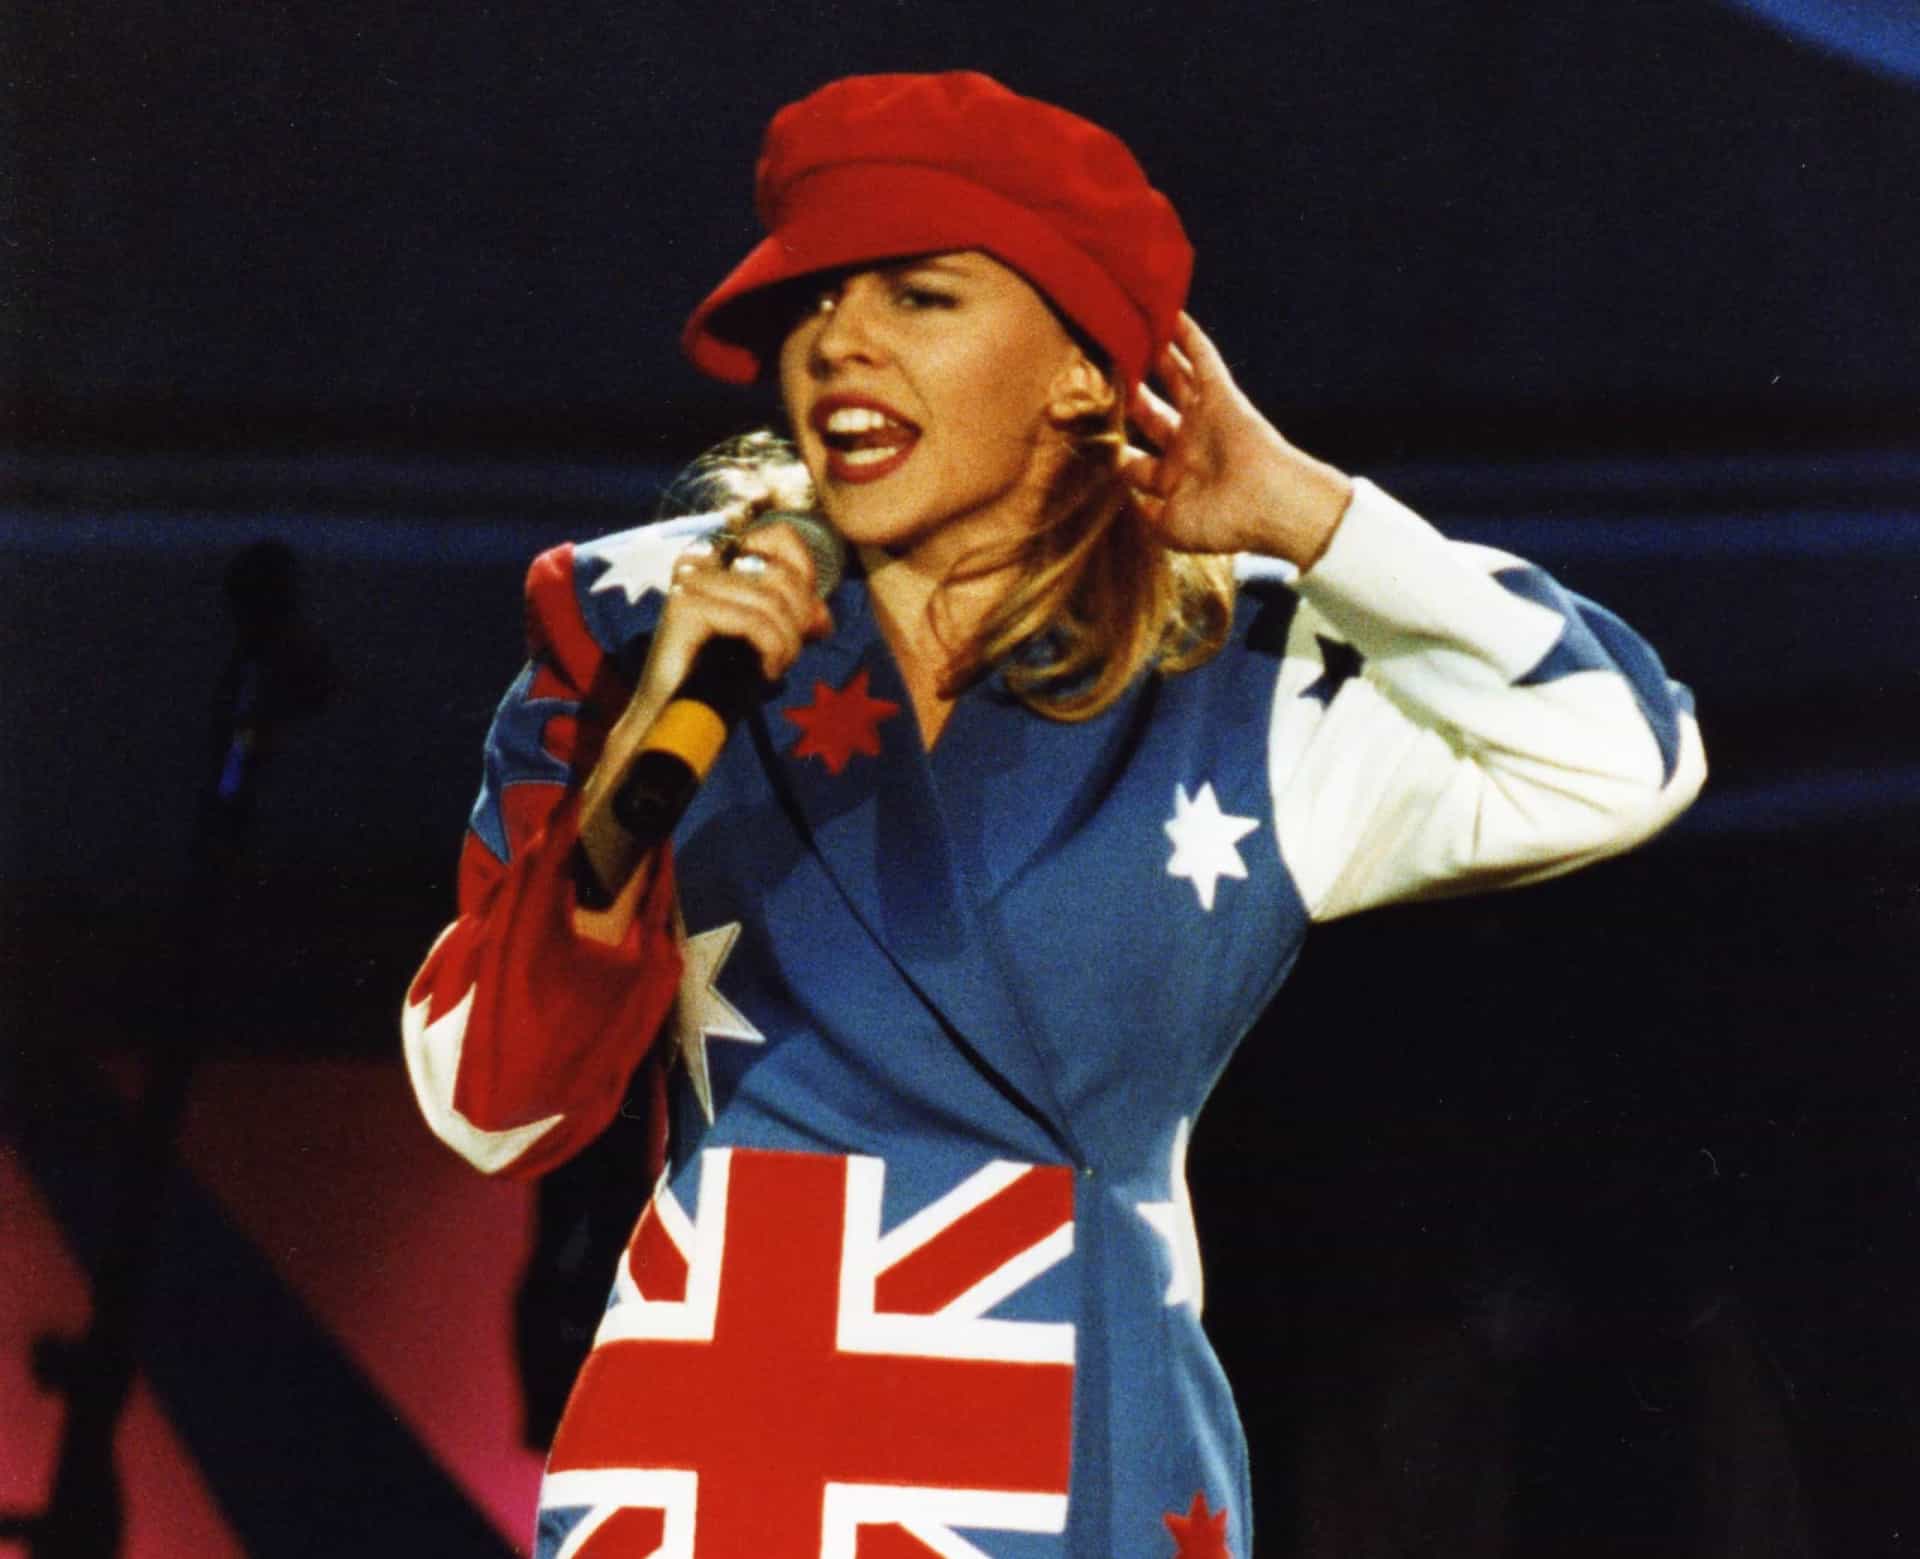 <p>"Better the Devil You Know" von ihrem dritten Studioalbum "Rhythm of Love" (1990) gilt als der Song, der das Image der australischen Singer-Songwriterin neu erfand, nachdem sie sich von ihrer Rolle als "Mädchen von nebenan" verabschiedet hatte.</p>